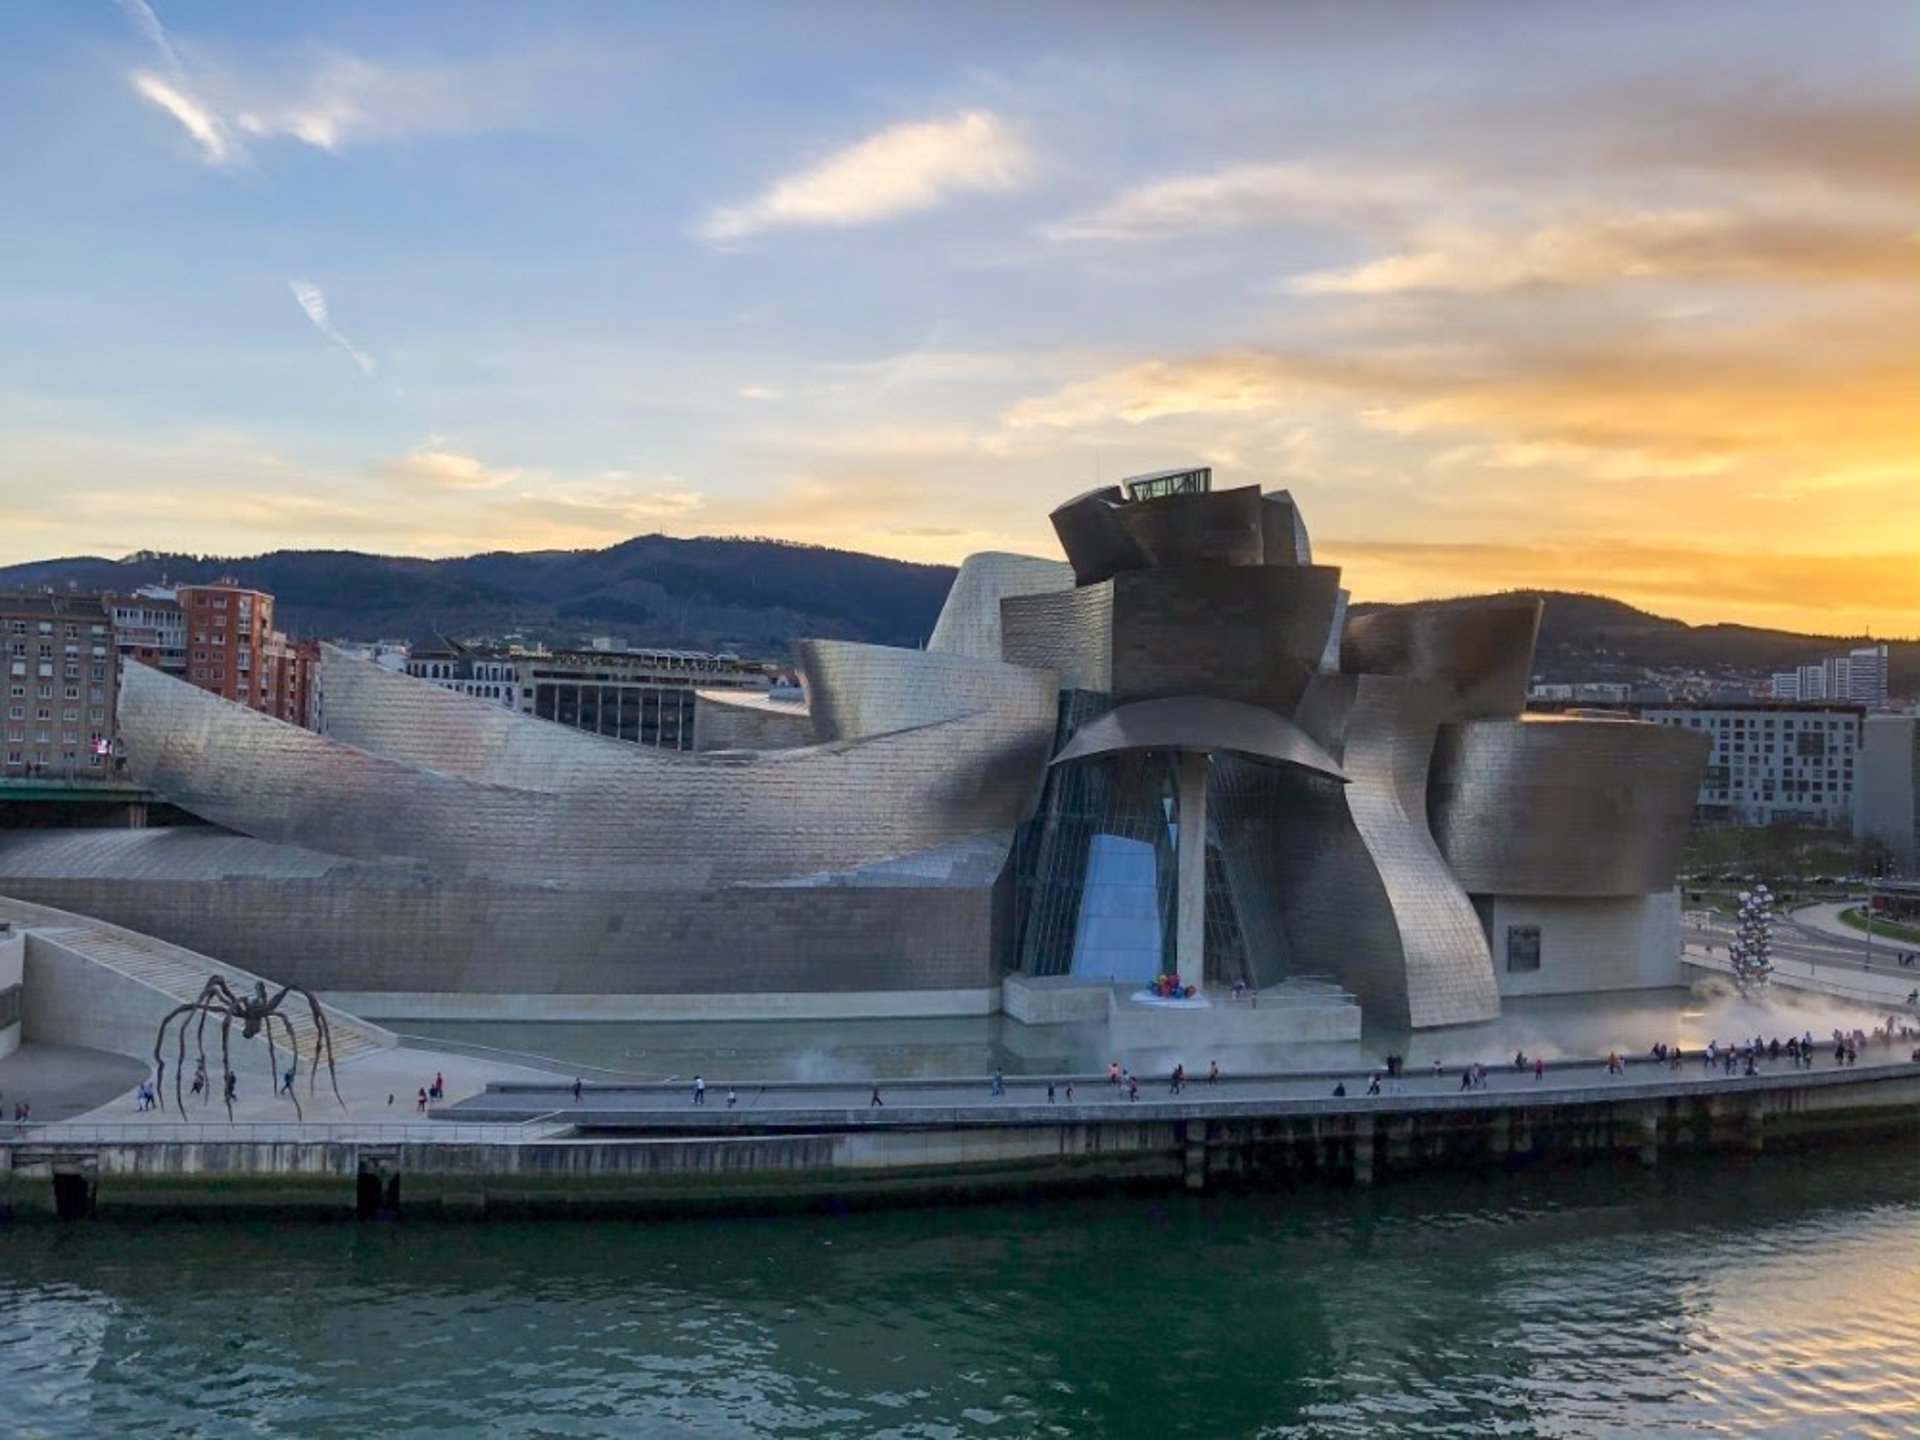 Las obras de Pablo Picasso serán expuesta en el Museo Guggenheim de Bilbao.